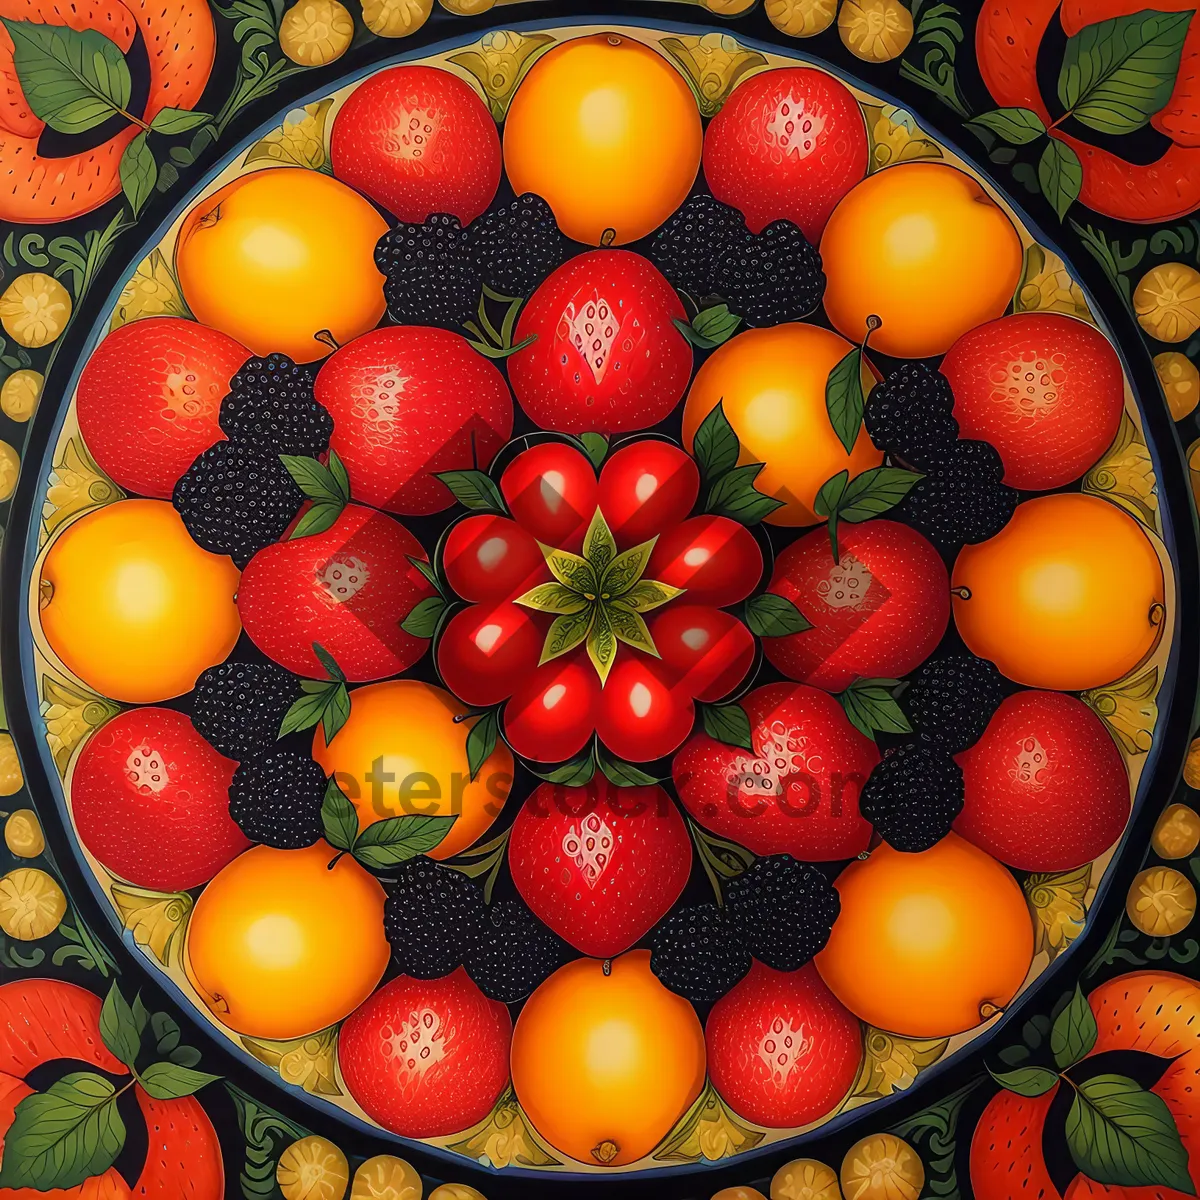 Picture of Vibrant Fresh Produce: Cherry Tomato, Persimmon, Citrus, Orange